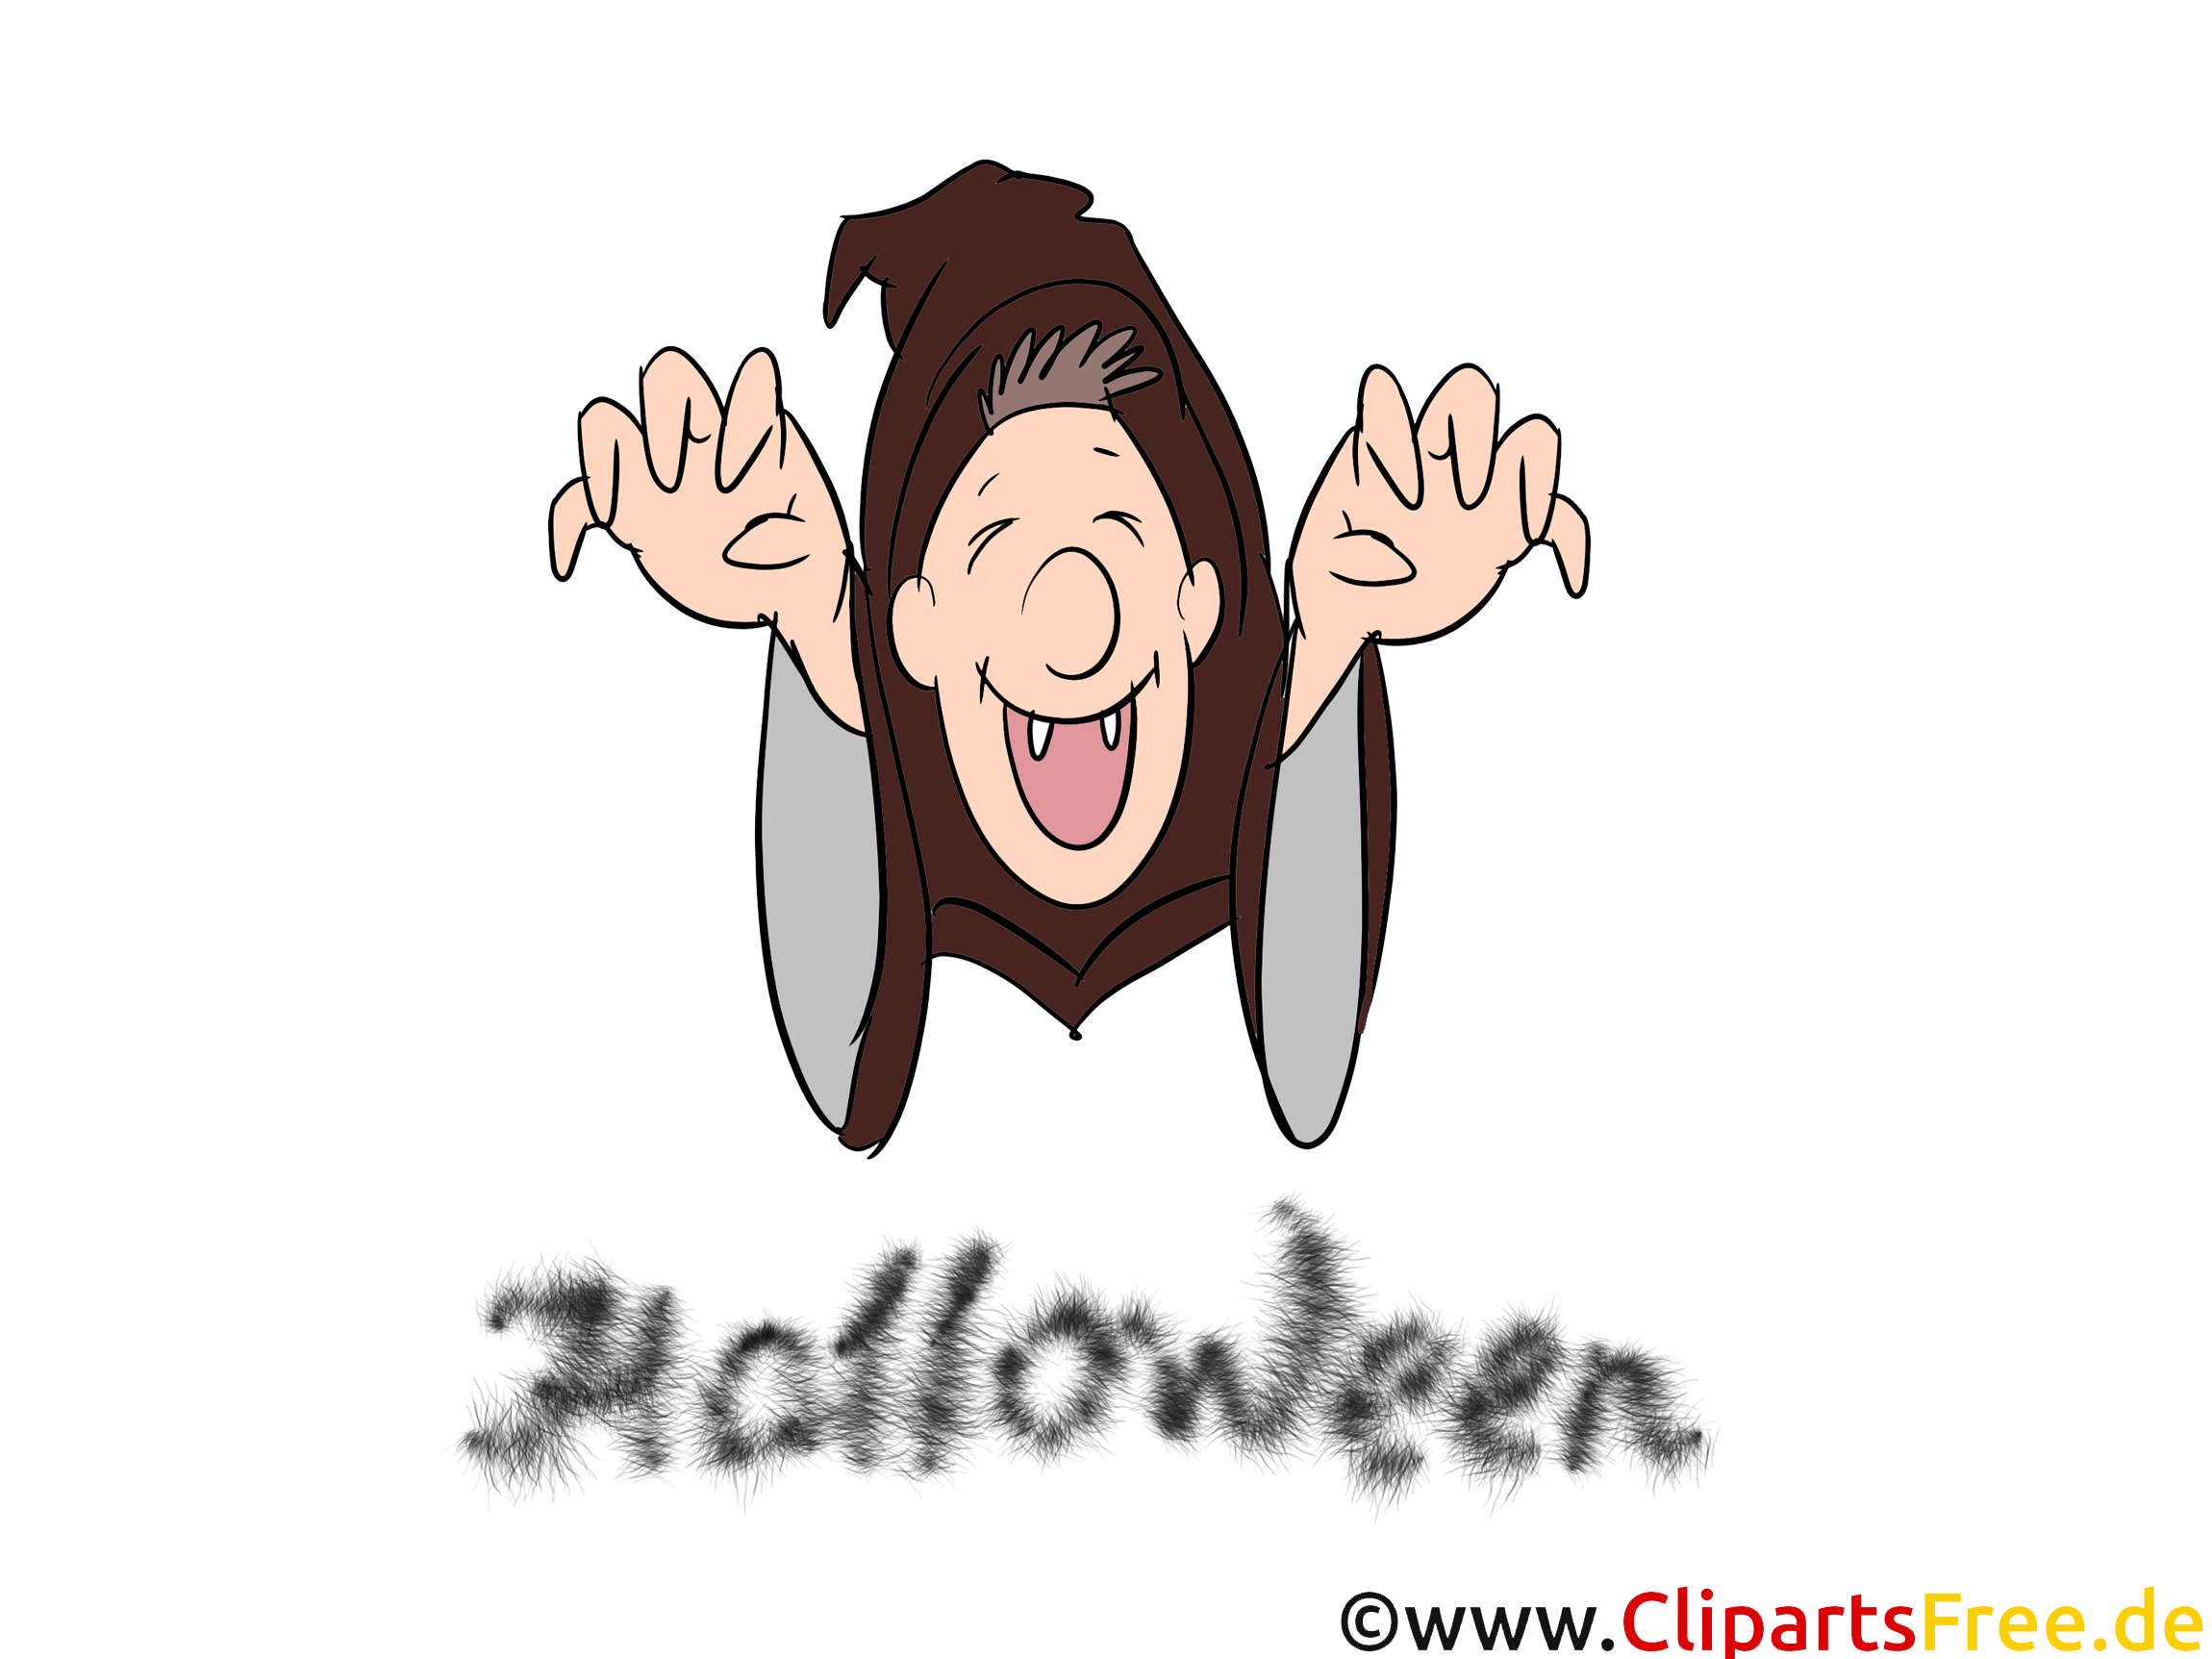 Vampire dessin à télécharger - Halloween images